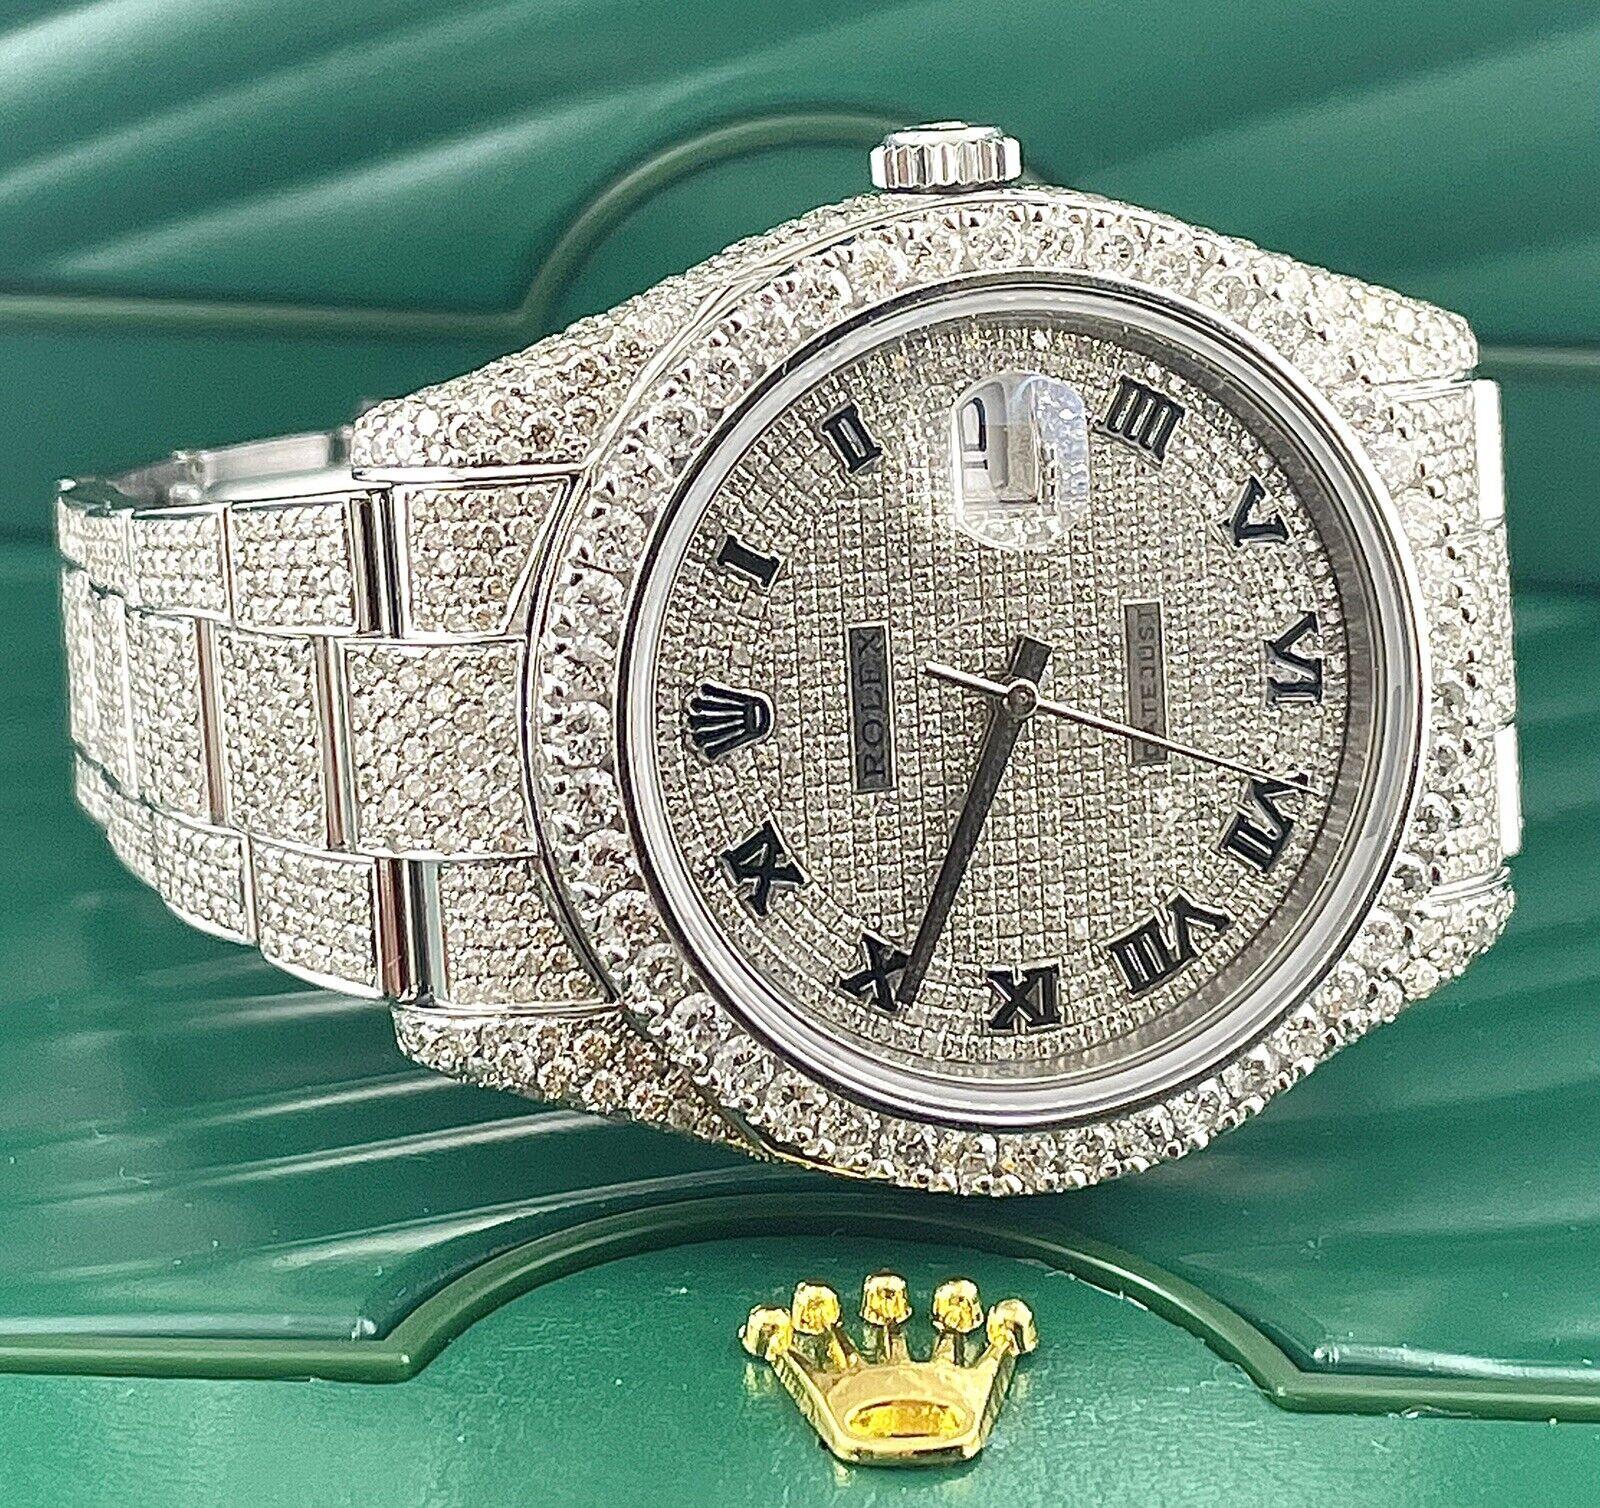 Montre Rolex Datejust II 41mm. Une montre d'occasion avec boîte cadeau. La montre est 100% authentique et est accompagnée d'une carte d'authenticité. La référence de la montre est 116300 et elle est en excellent état (voir photos). Le cadran est de